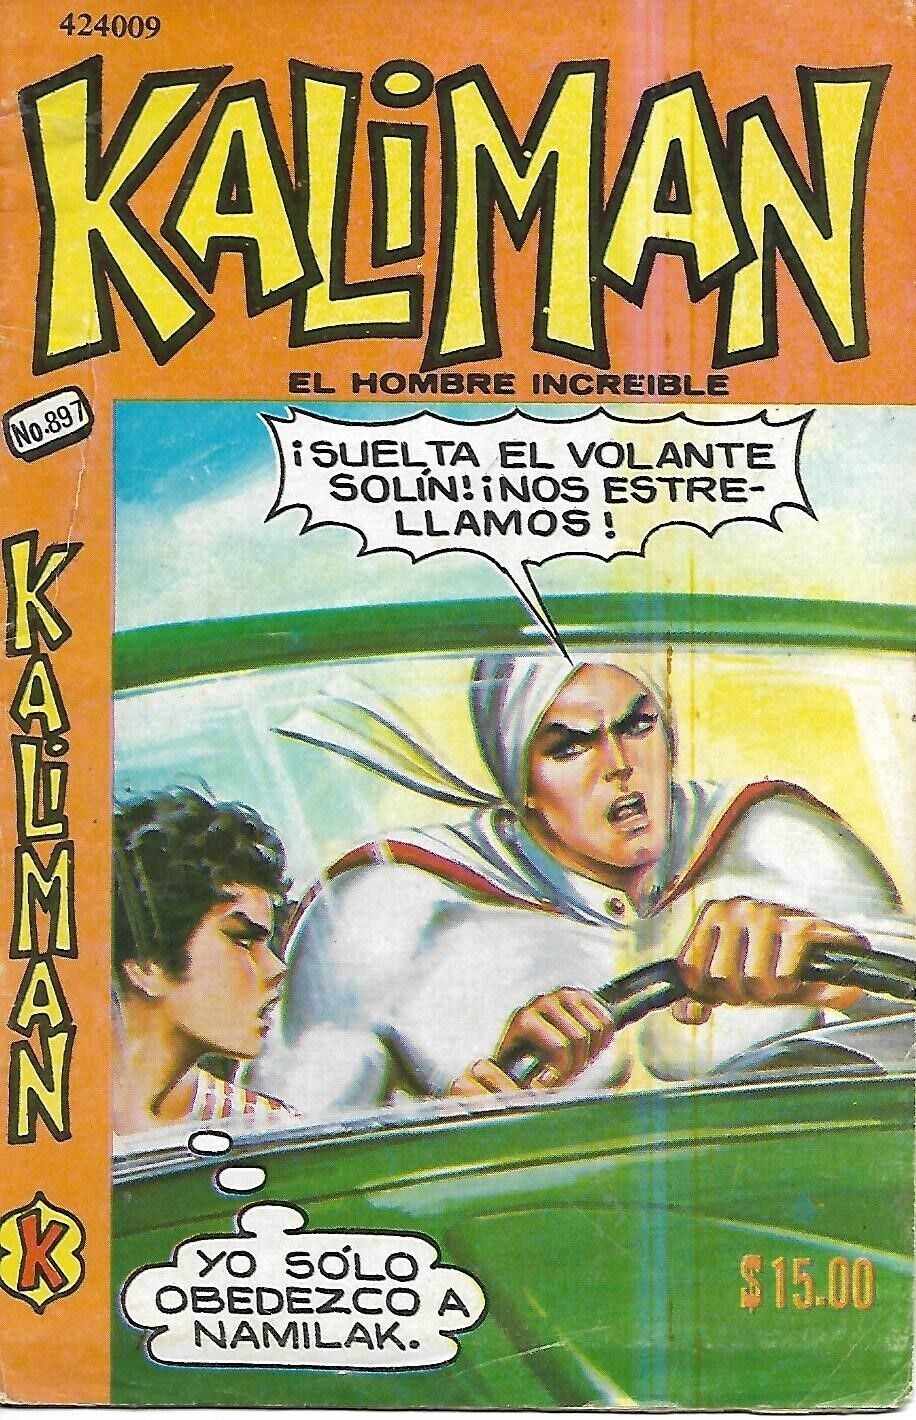 Kaliman El Hombre Increible #897 - Febrero 4, 1983 - Mexico